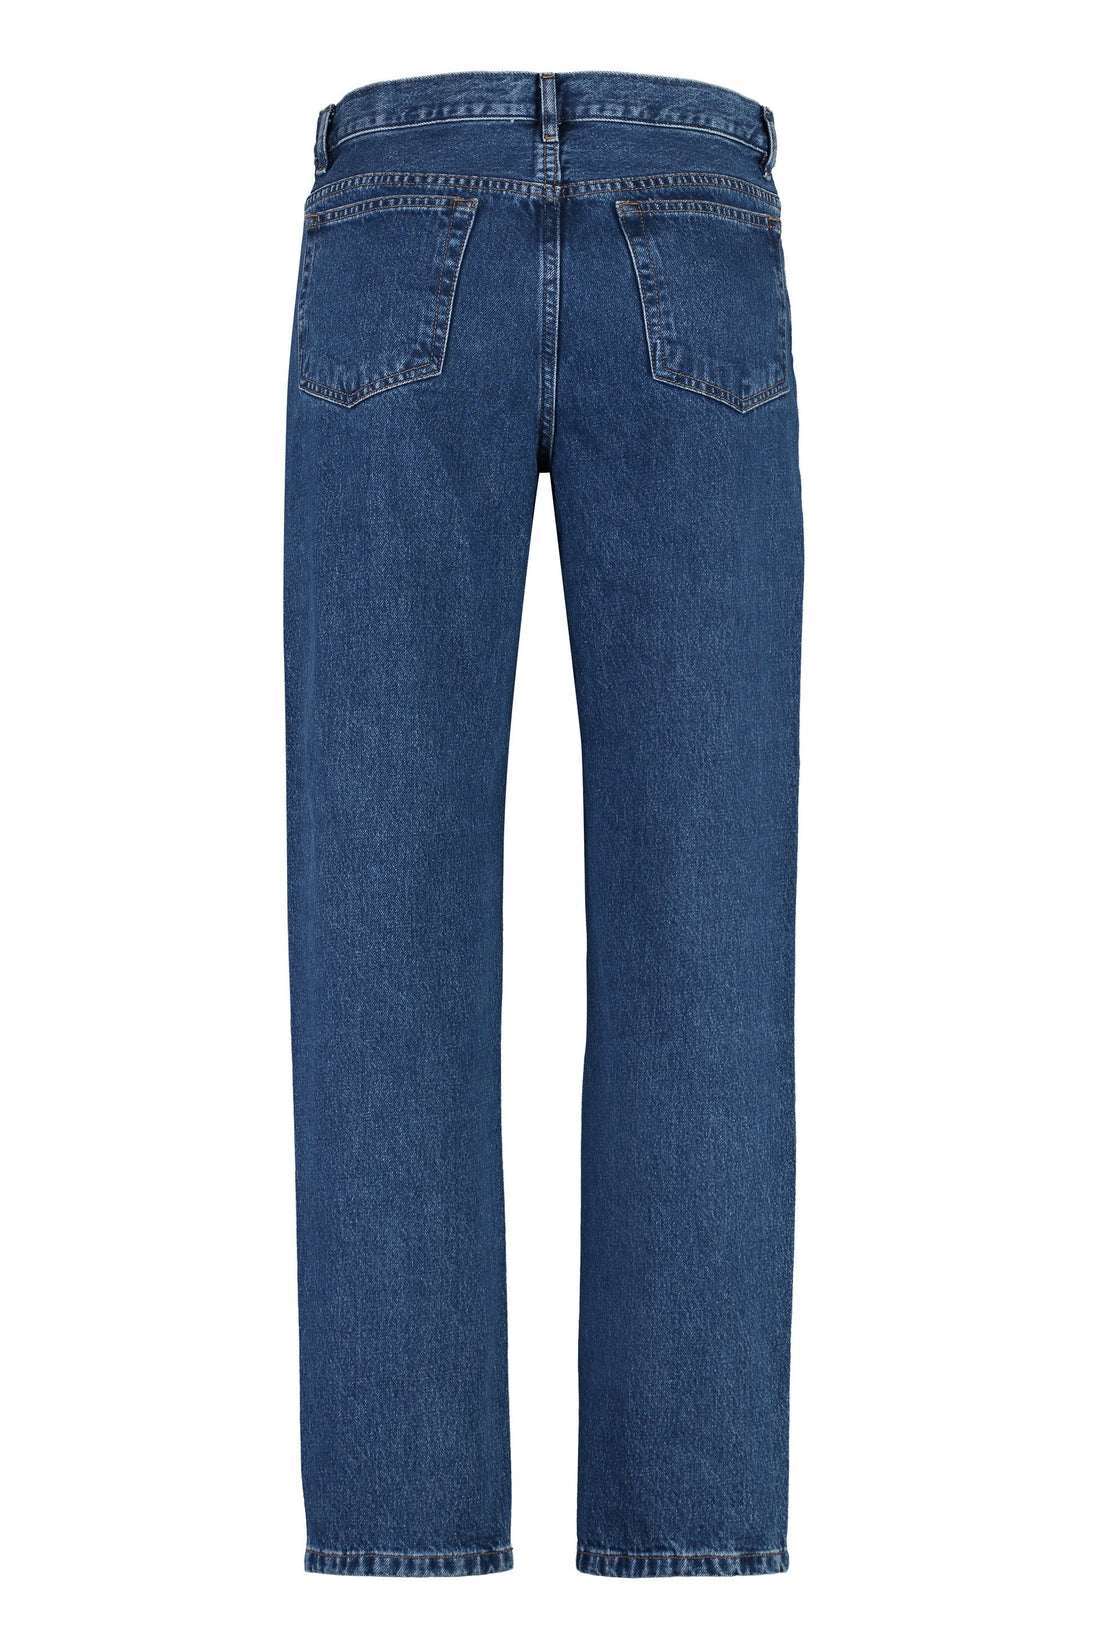 A.P.C.-OUTLET-SALE-5-pocket straight-leg jeans-ARCHIVIST